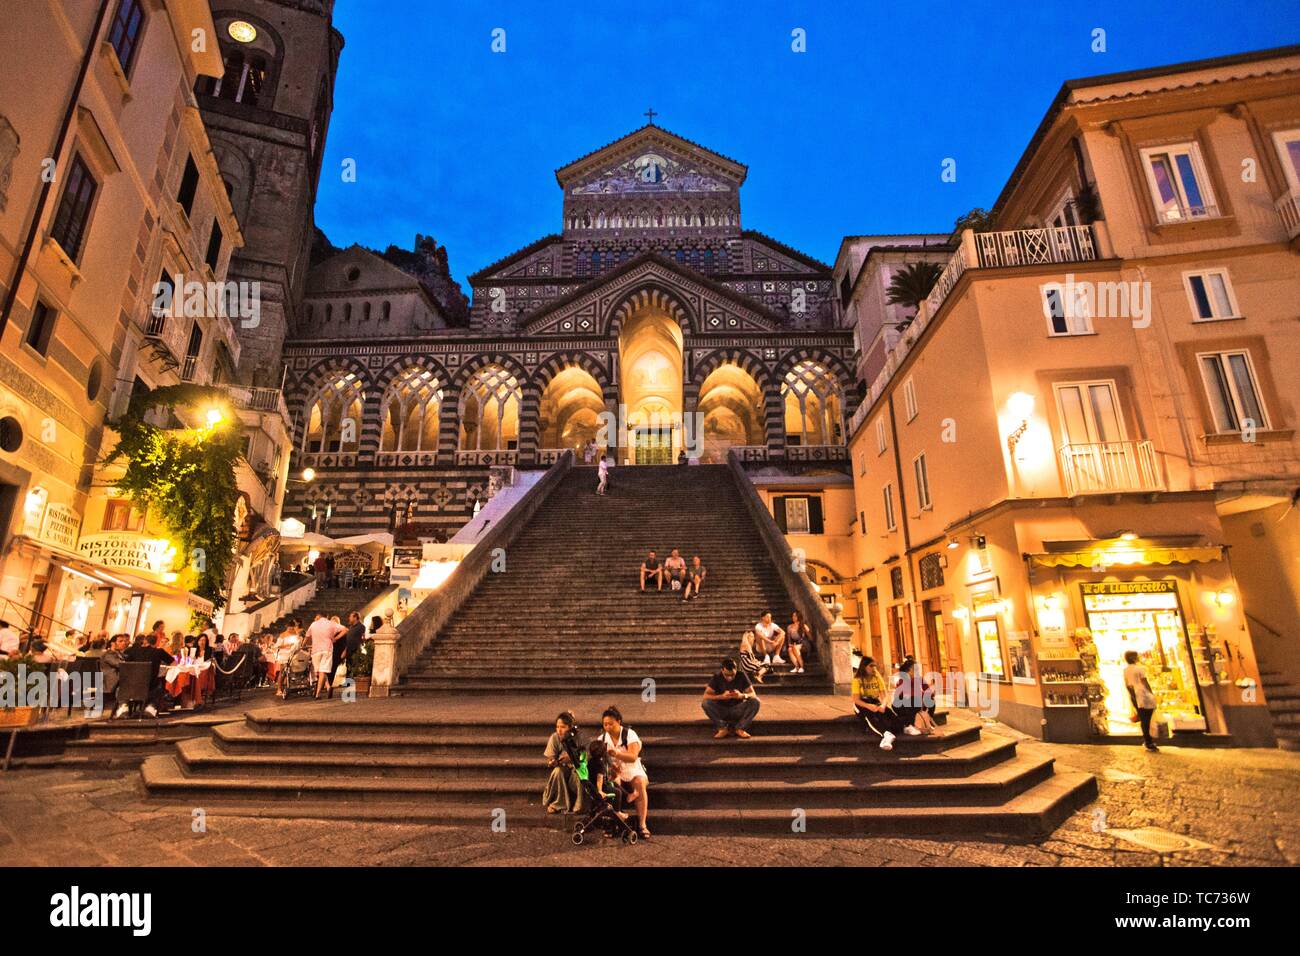 La catedral de Amalfi, Duomo di Amalfi, la Plaza de la Catedral, la Piazza del Duomo, Amalfi, provincia de Salerno, en la costa de Amalfi, el Golfo de Salerno, Campania, Foto de stock